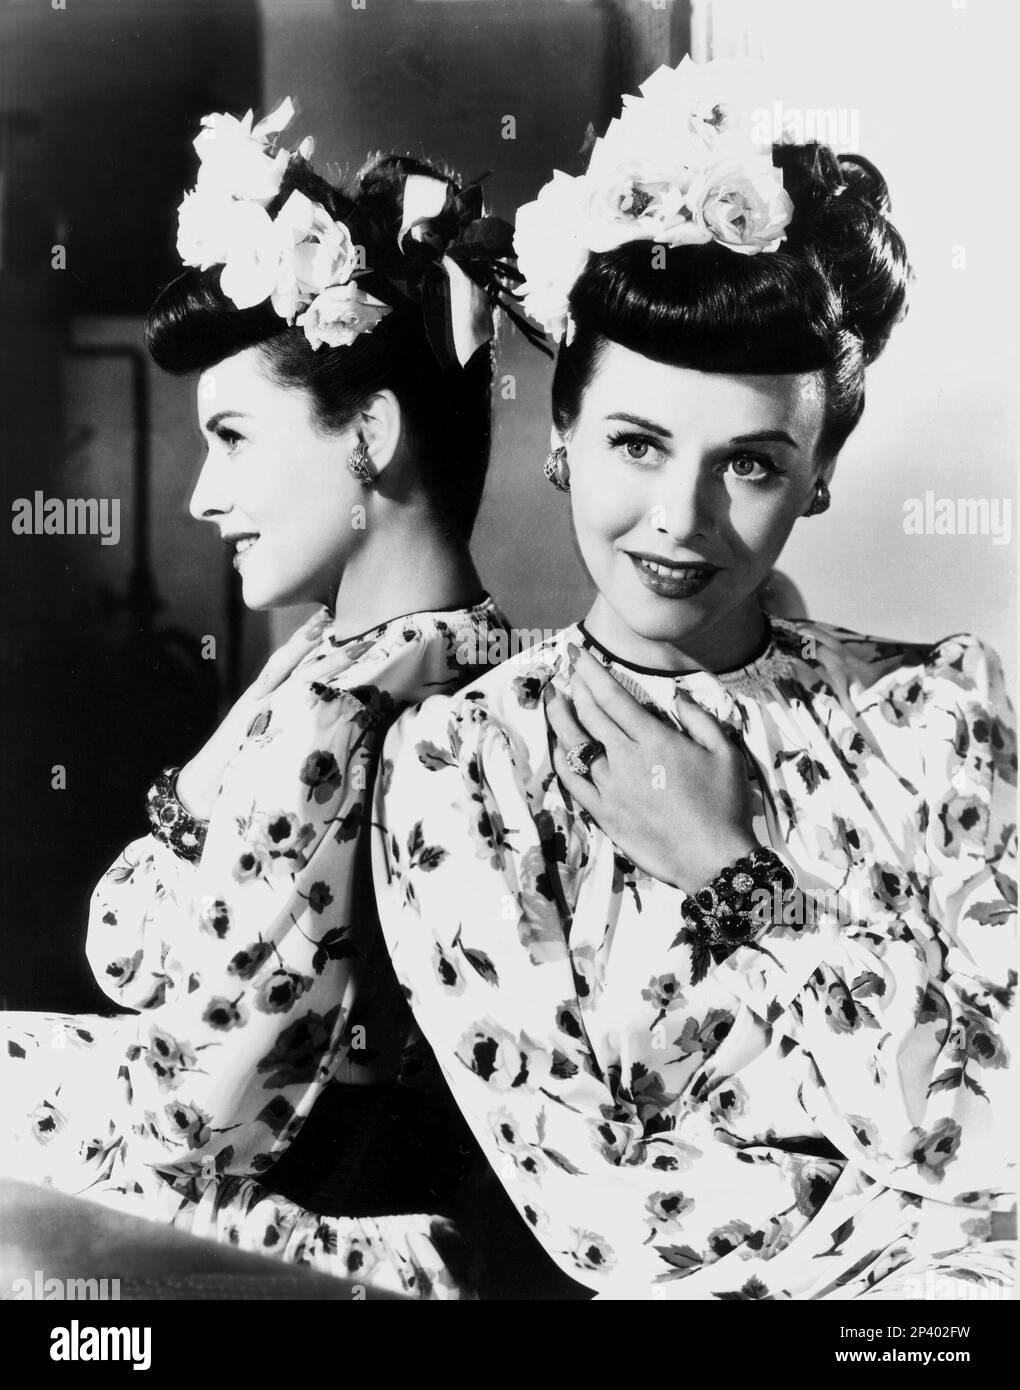 The american actress PAULETTE GODDARD ( 1910 - 1990 ) - CINEMA - chignon - specchio - mirror - riflesso - reflex - fiori - fiore - flowers - rose - rosa - rings - anello - anelli - bracelet - braccialetto - orecchini - earrings - orecchino - bijoux - gioiello - gioielli - jewels - jewellery - profilo - profile  - smile - sorriso - hands - mano - mani   ---- Archivio GBB Stock Photo